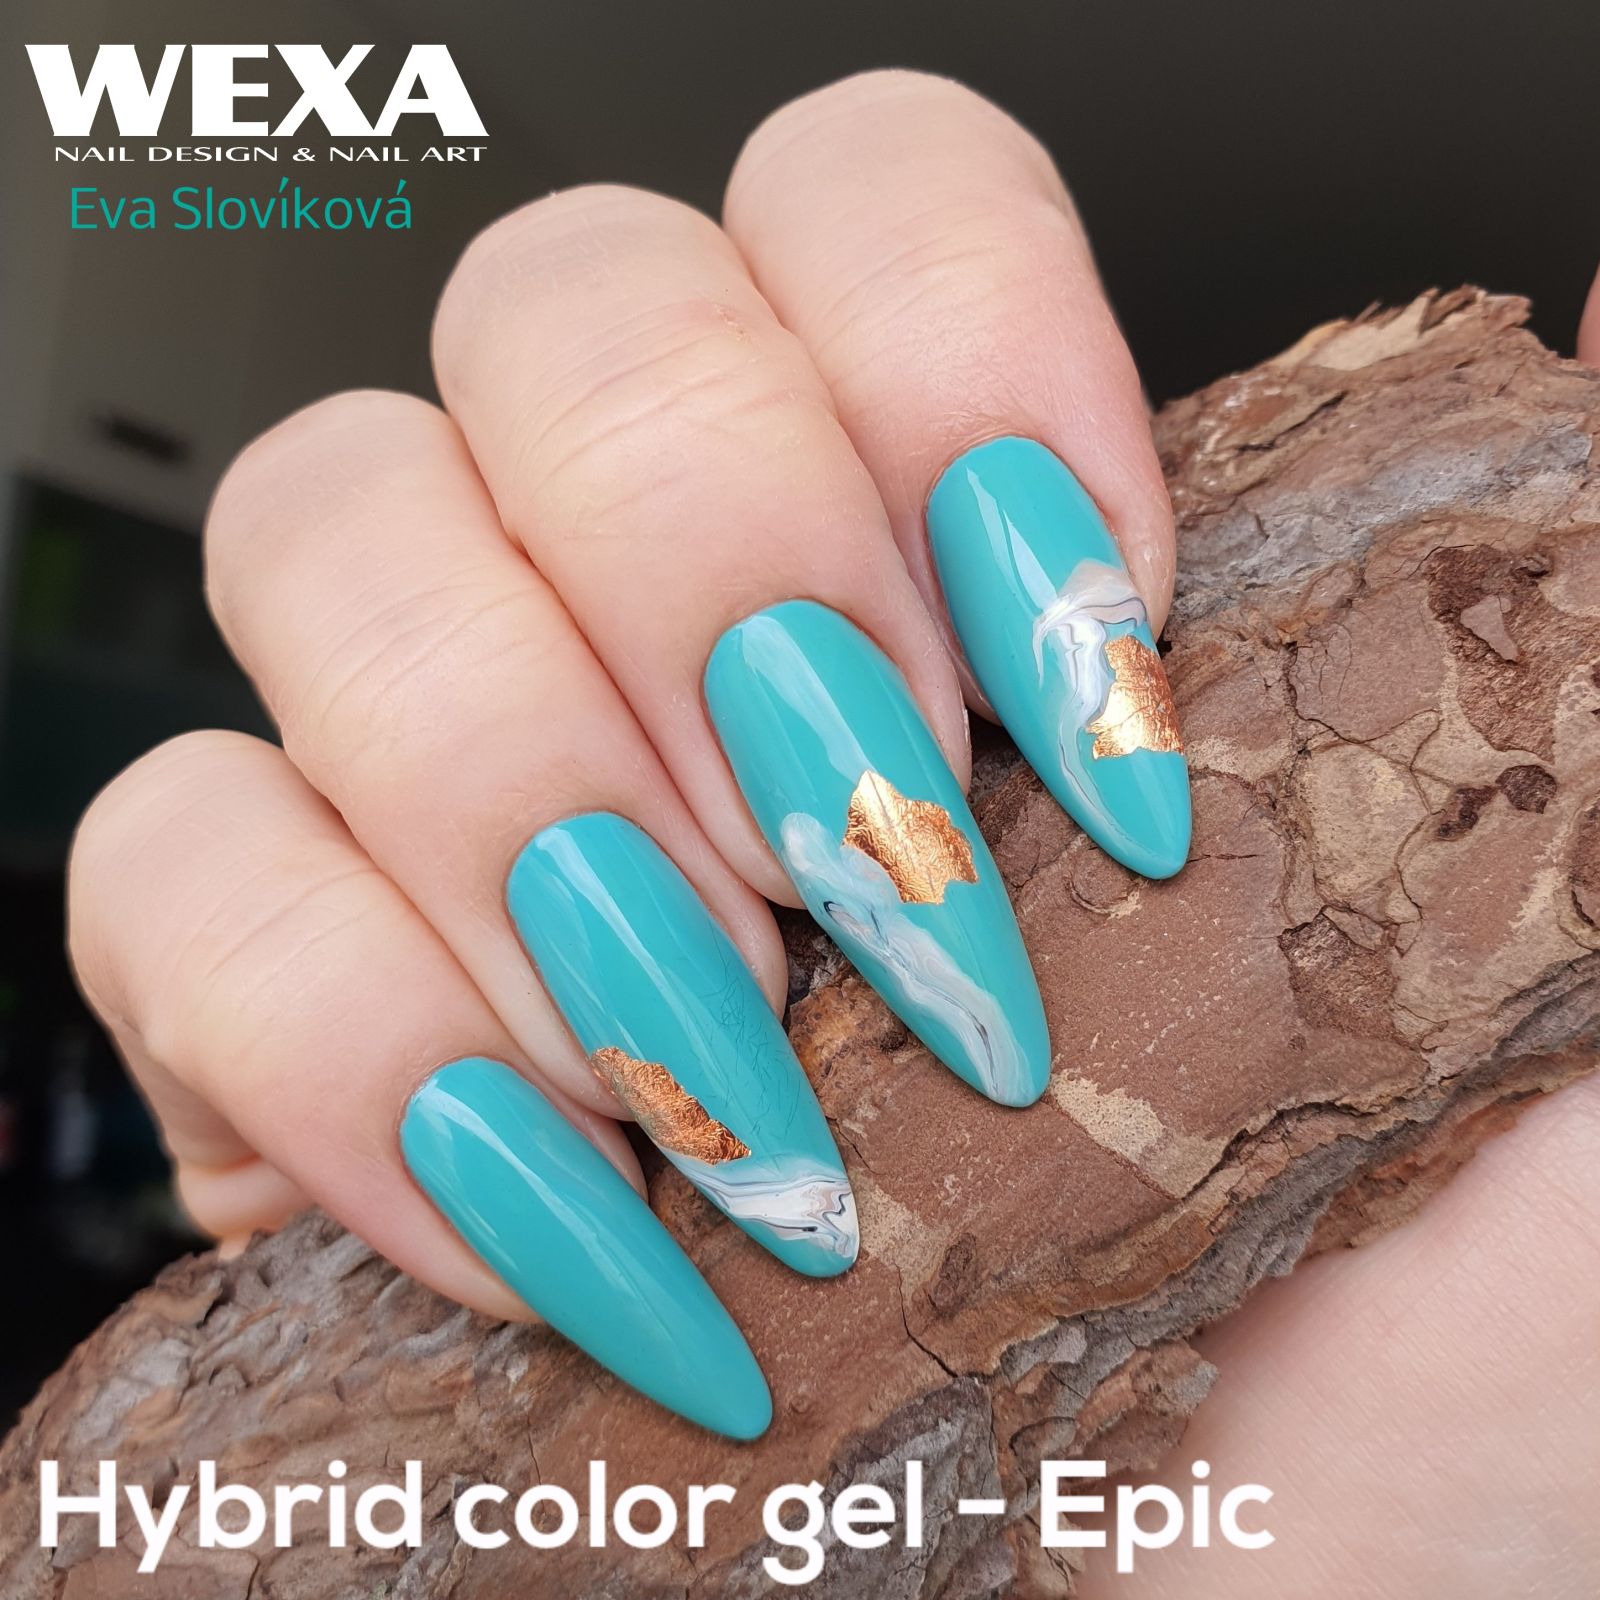 Hybrid color gel na nechty - Epic